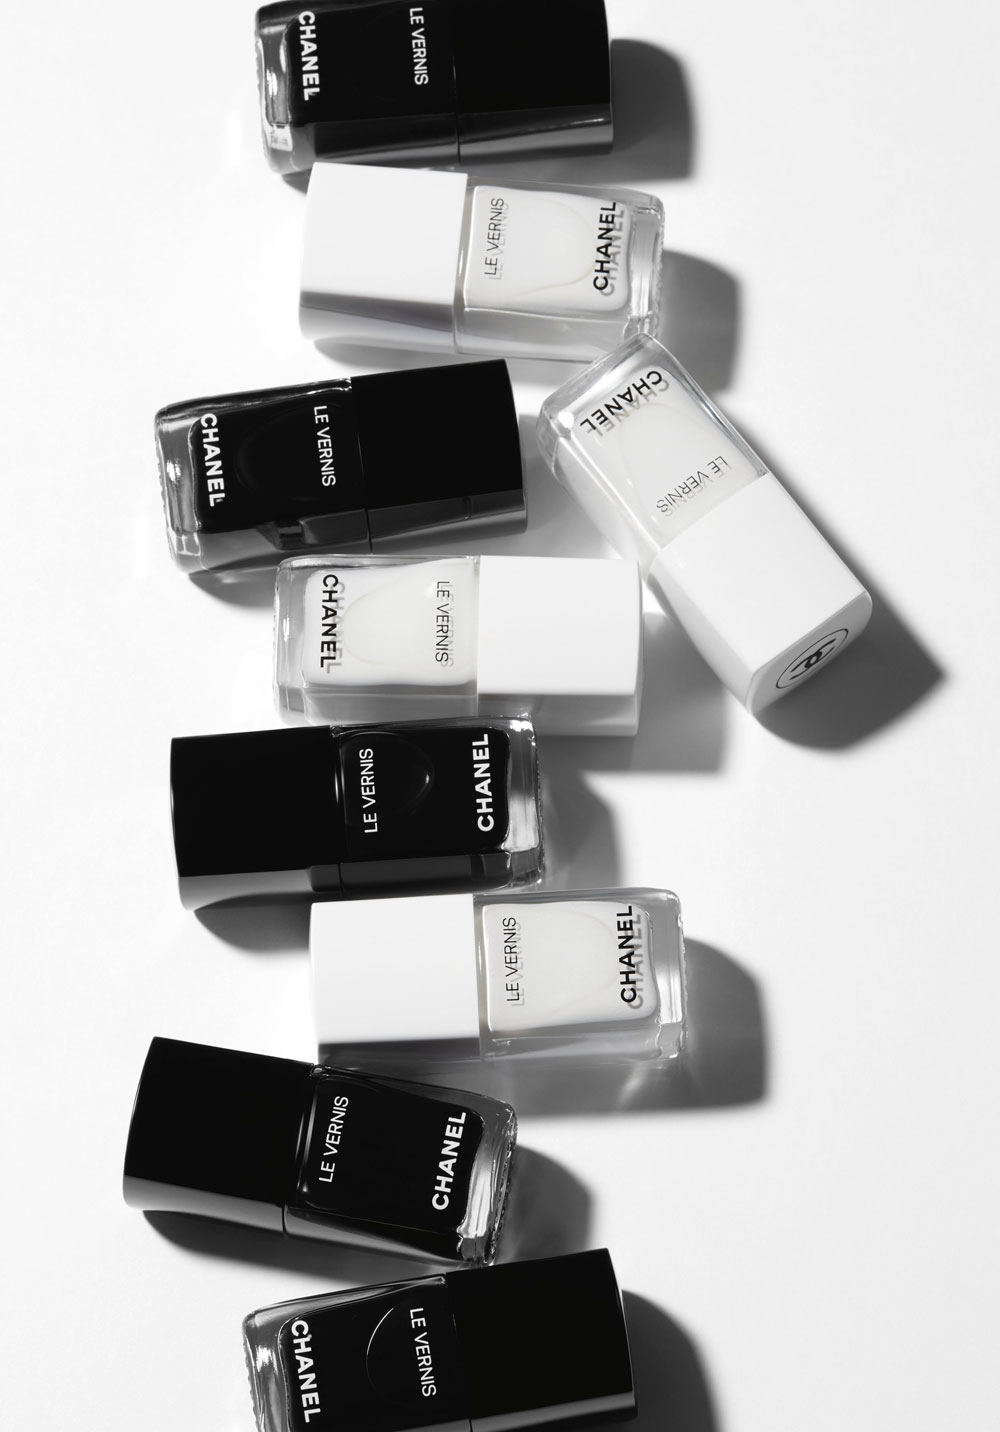 sonrisa schwelgt im Makeup-Glück und zeigt Dir heute die Chanel Herbstkollektion 2019 Noir et Blanc im Detail.